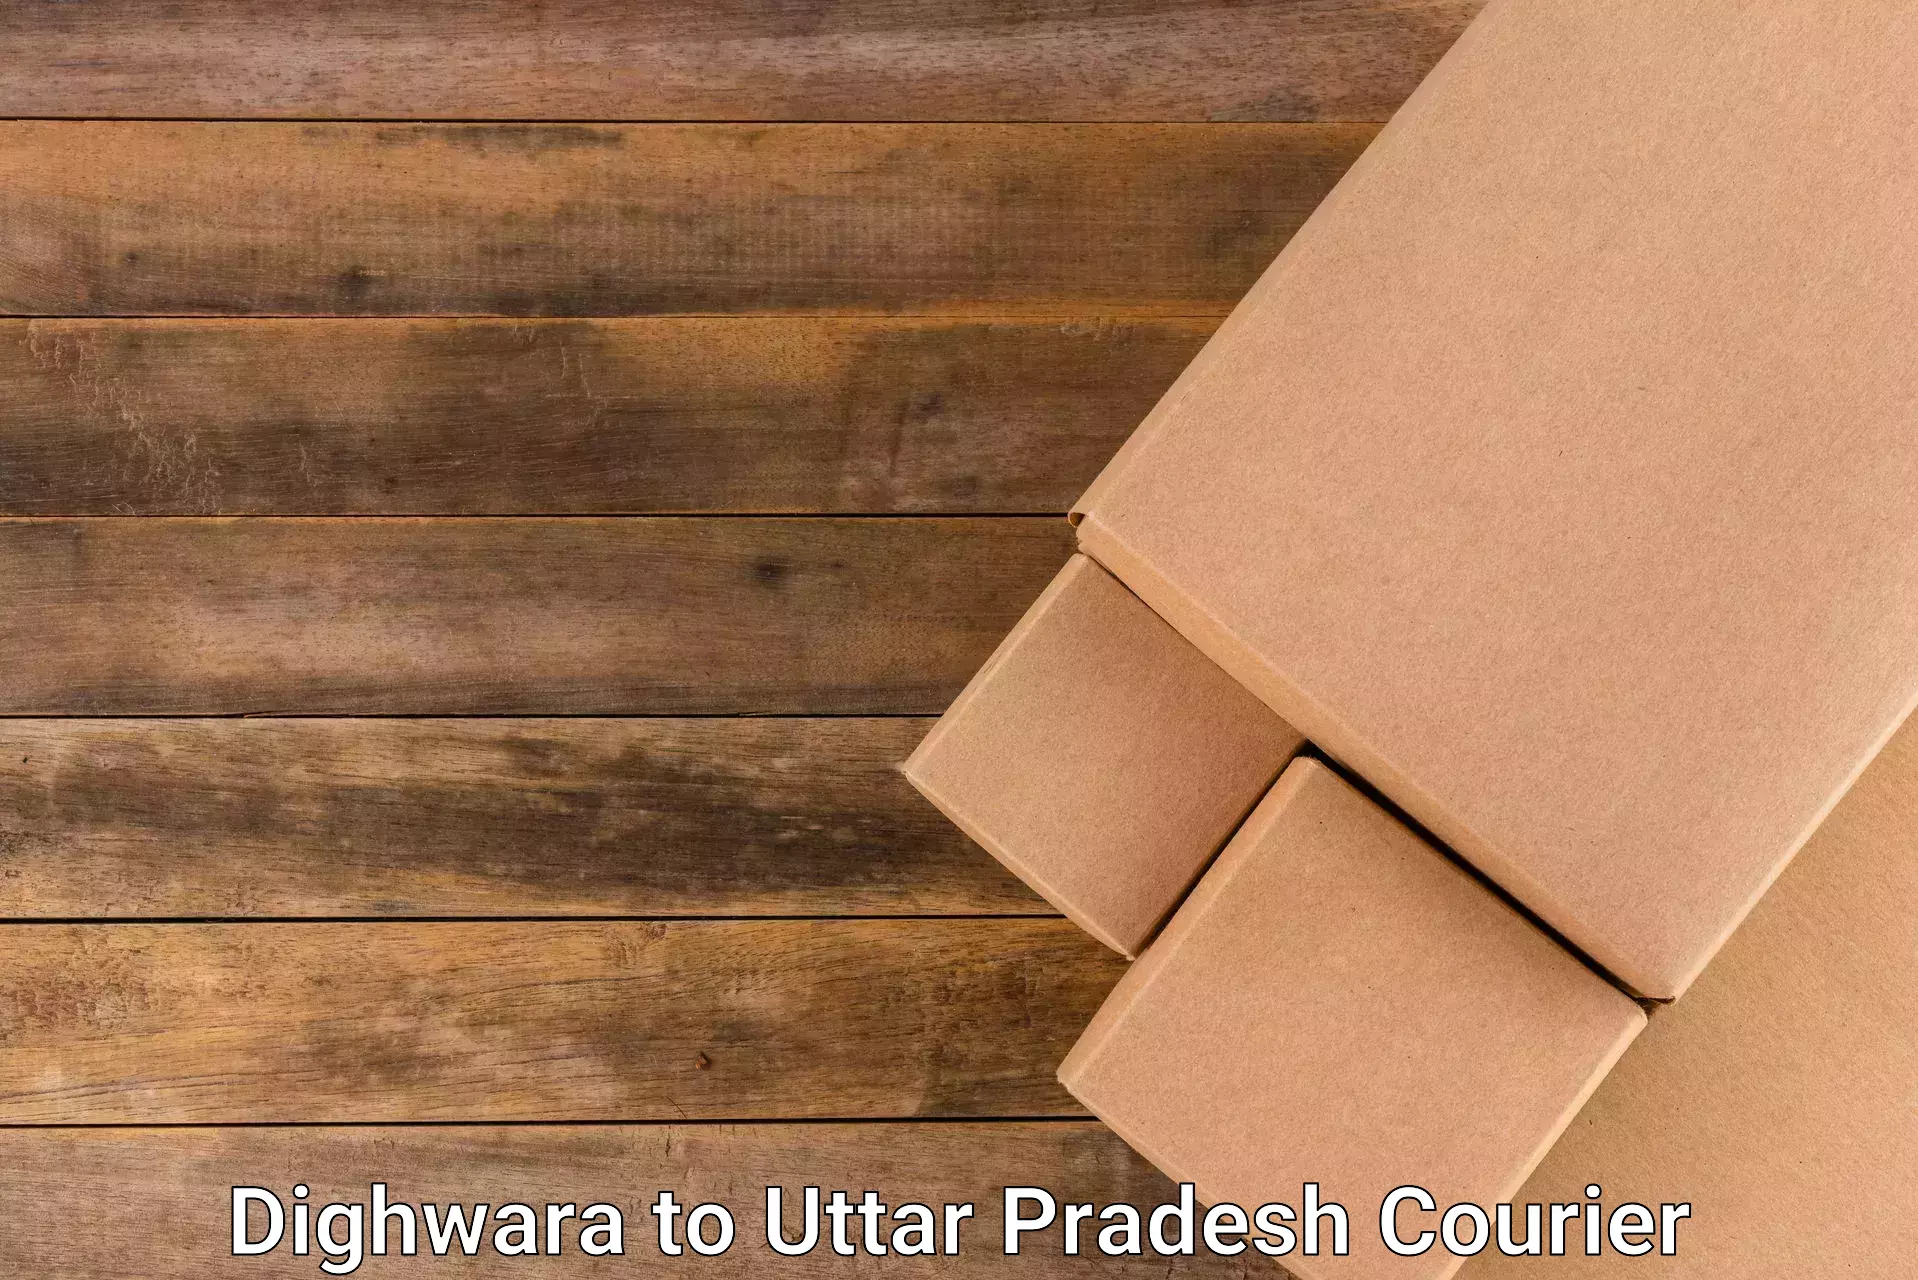 Package delivery network Dighwara to Uttar Pradesh